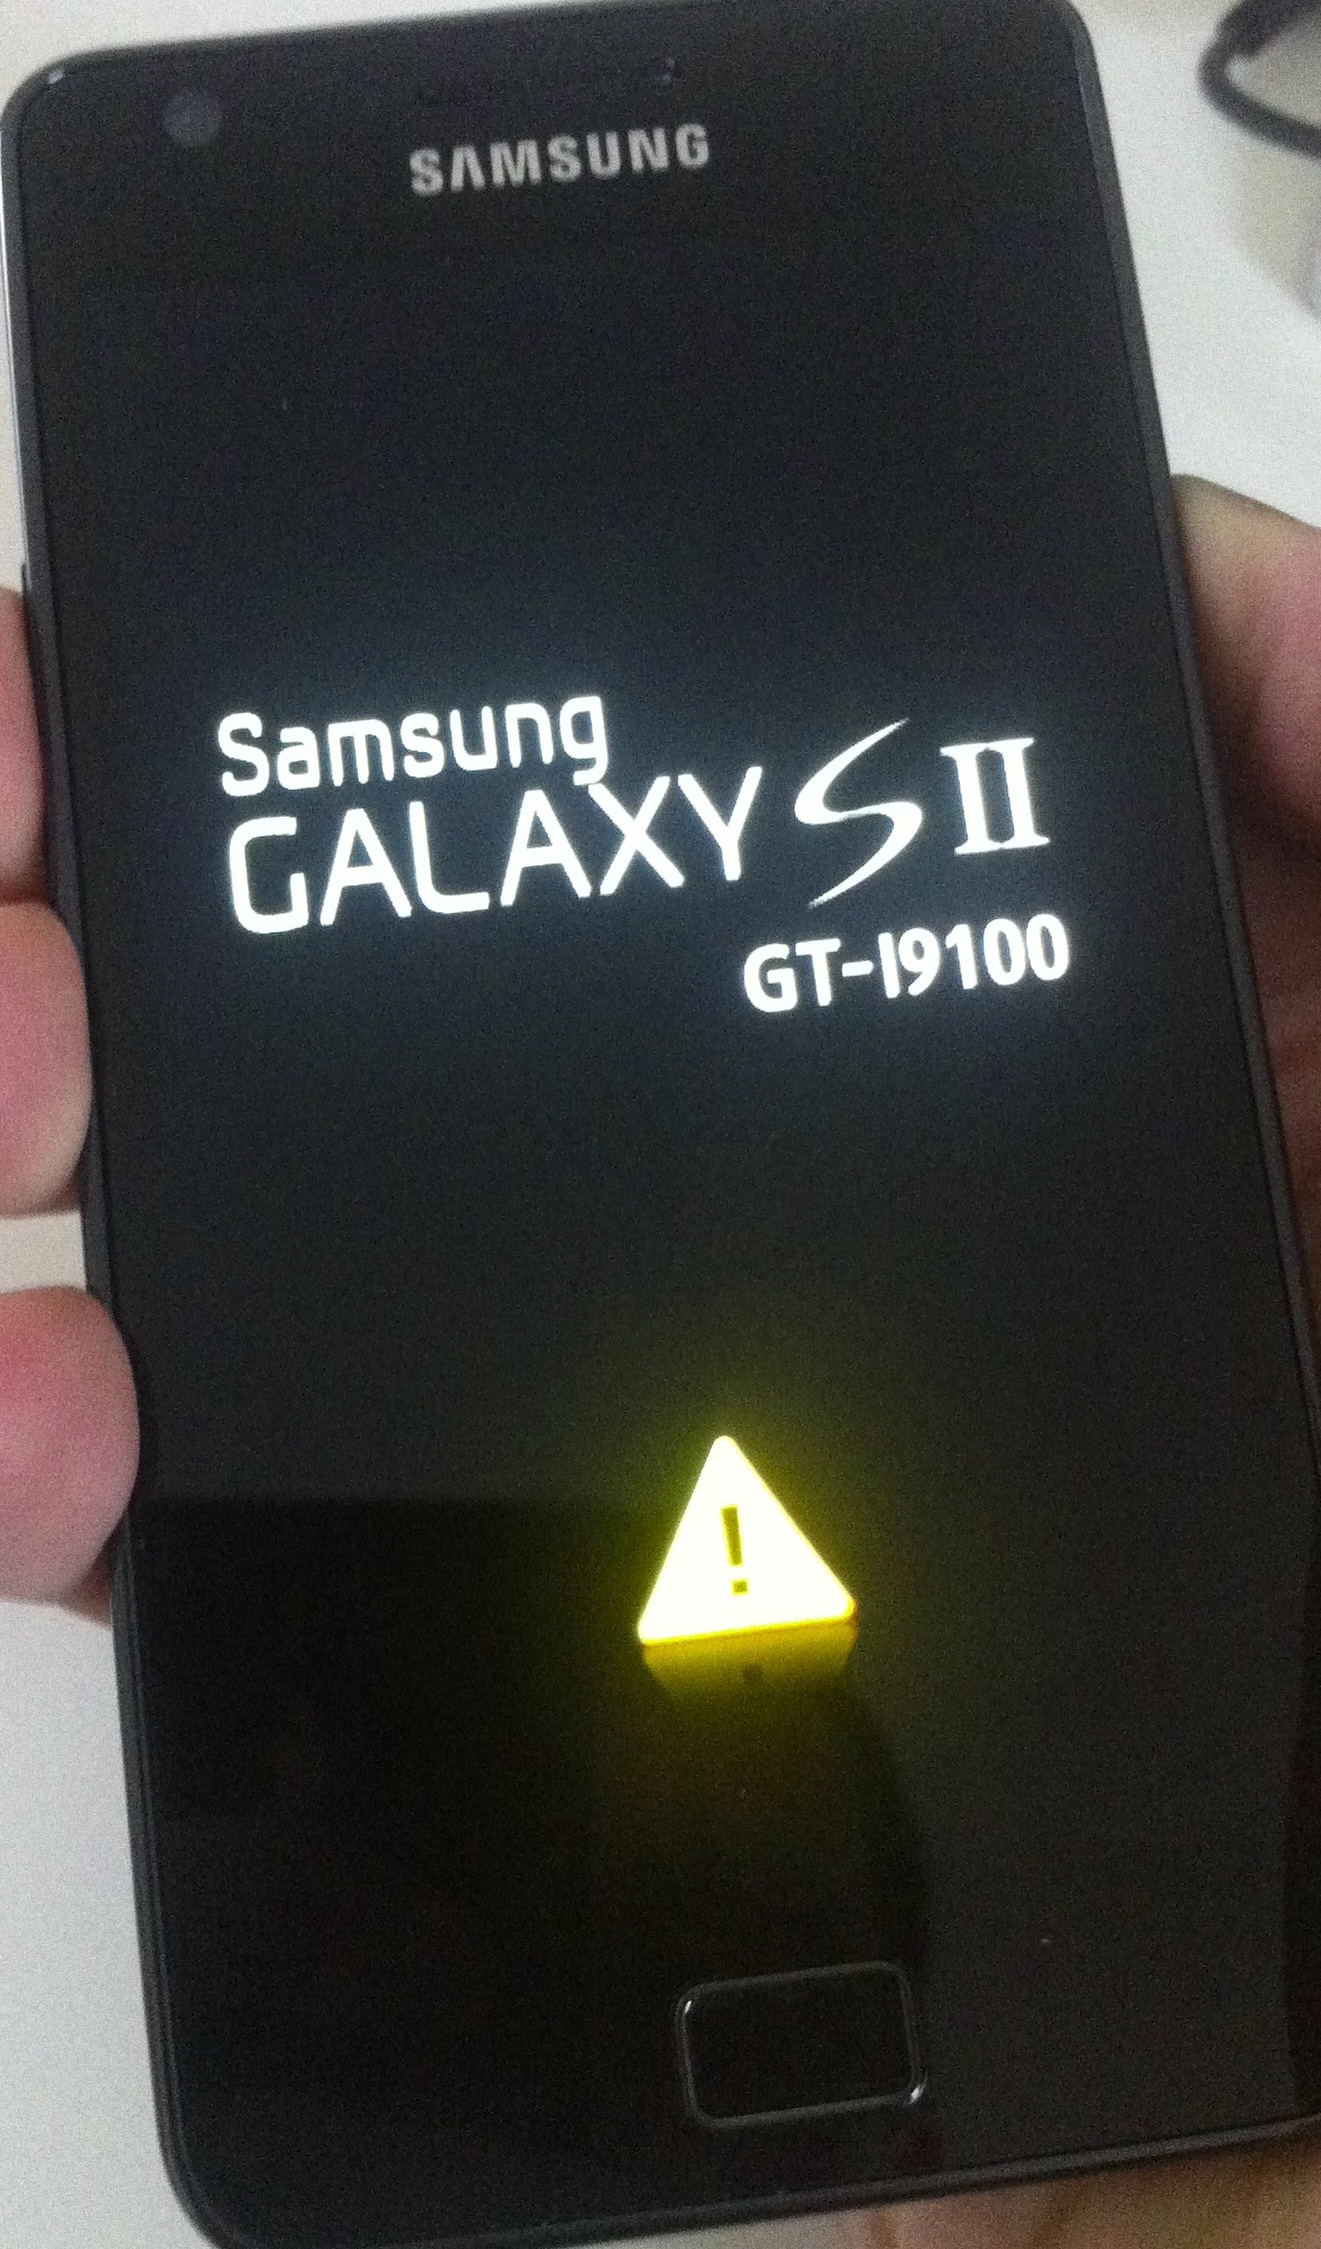 Galaxy Tab S2